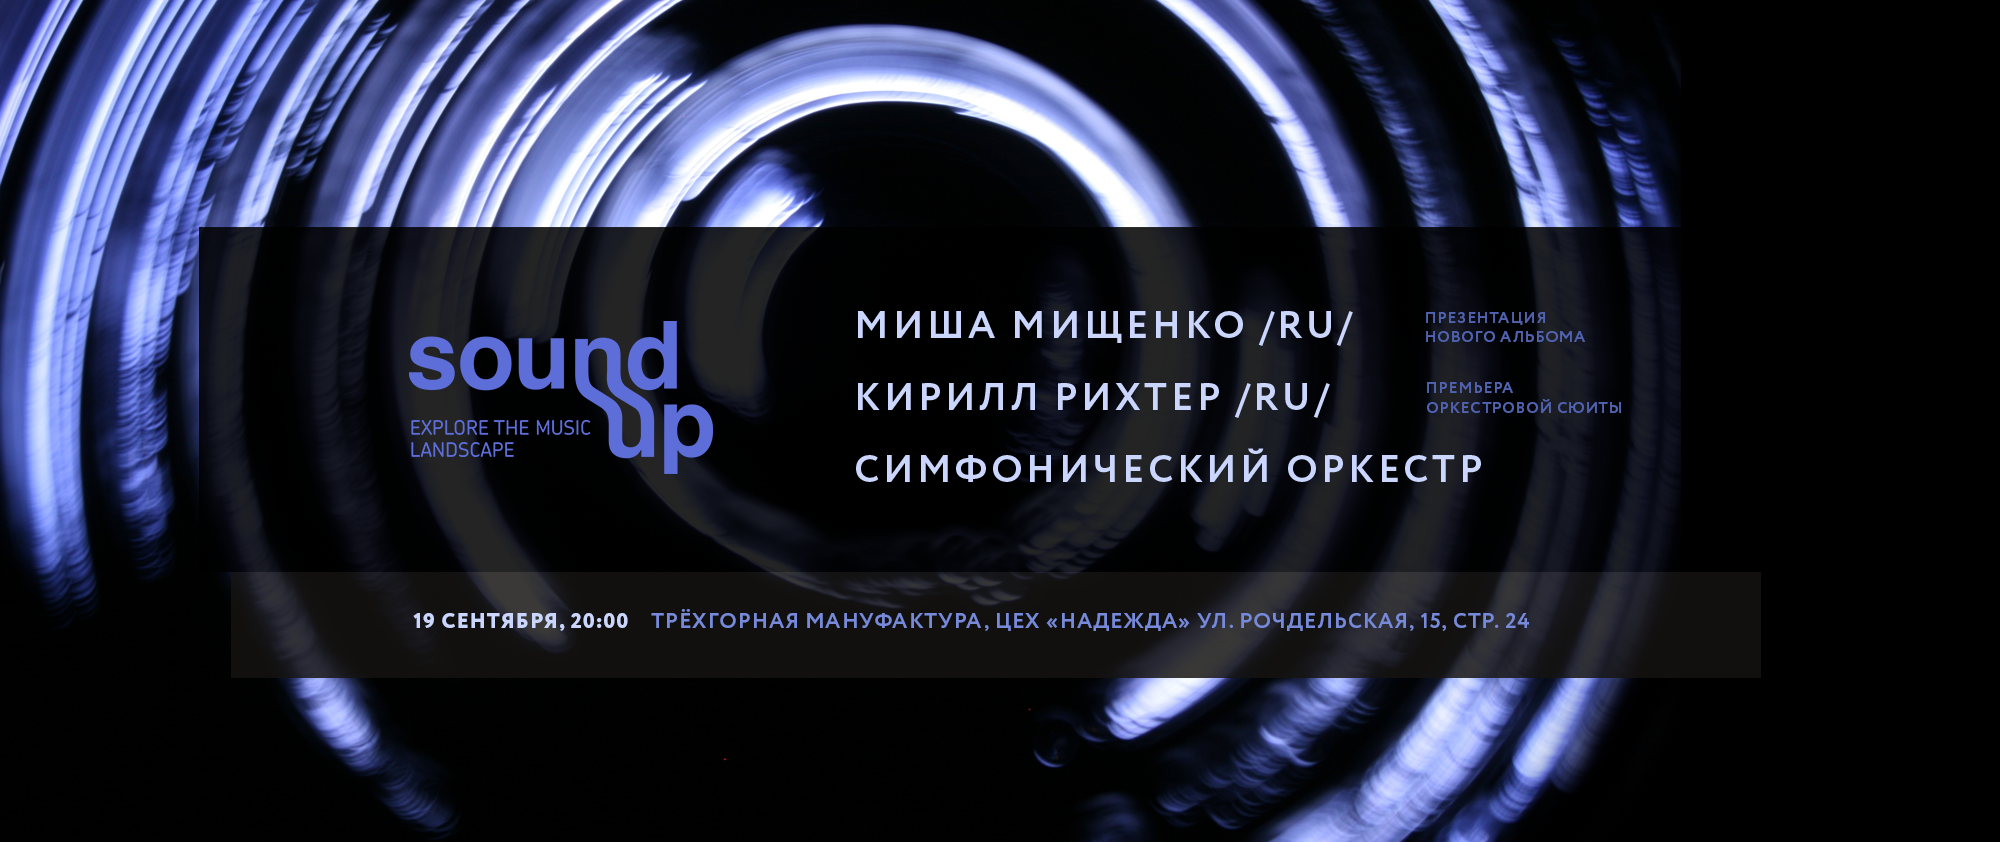 Фестиваль Sound Up представит две мировые симфонические премьеры, фото